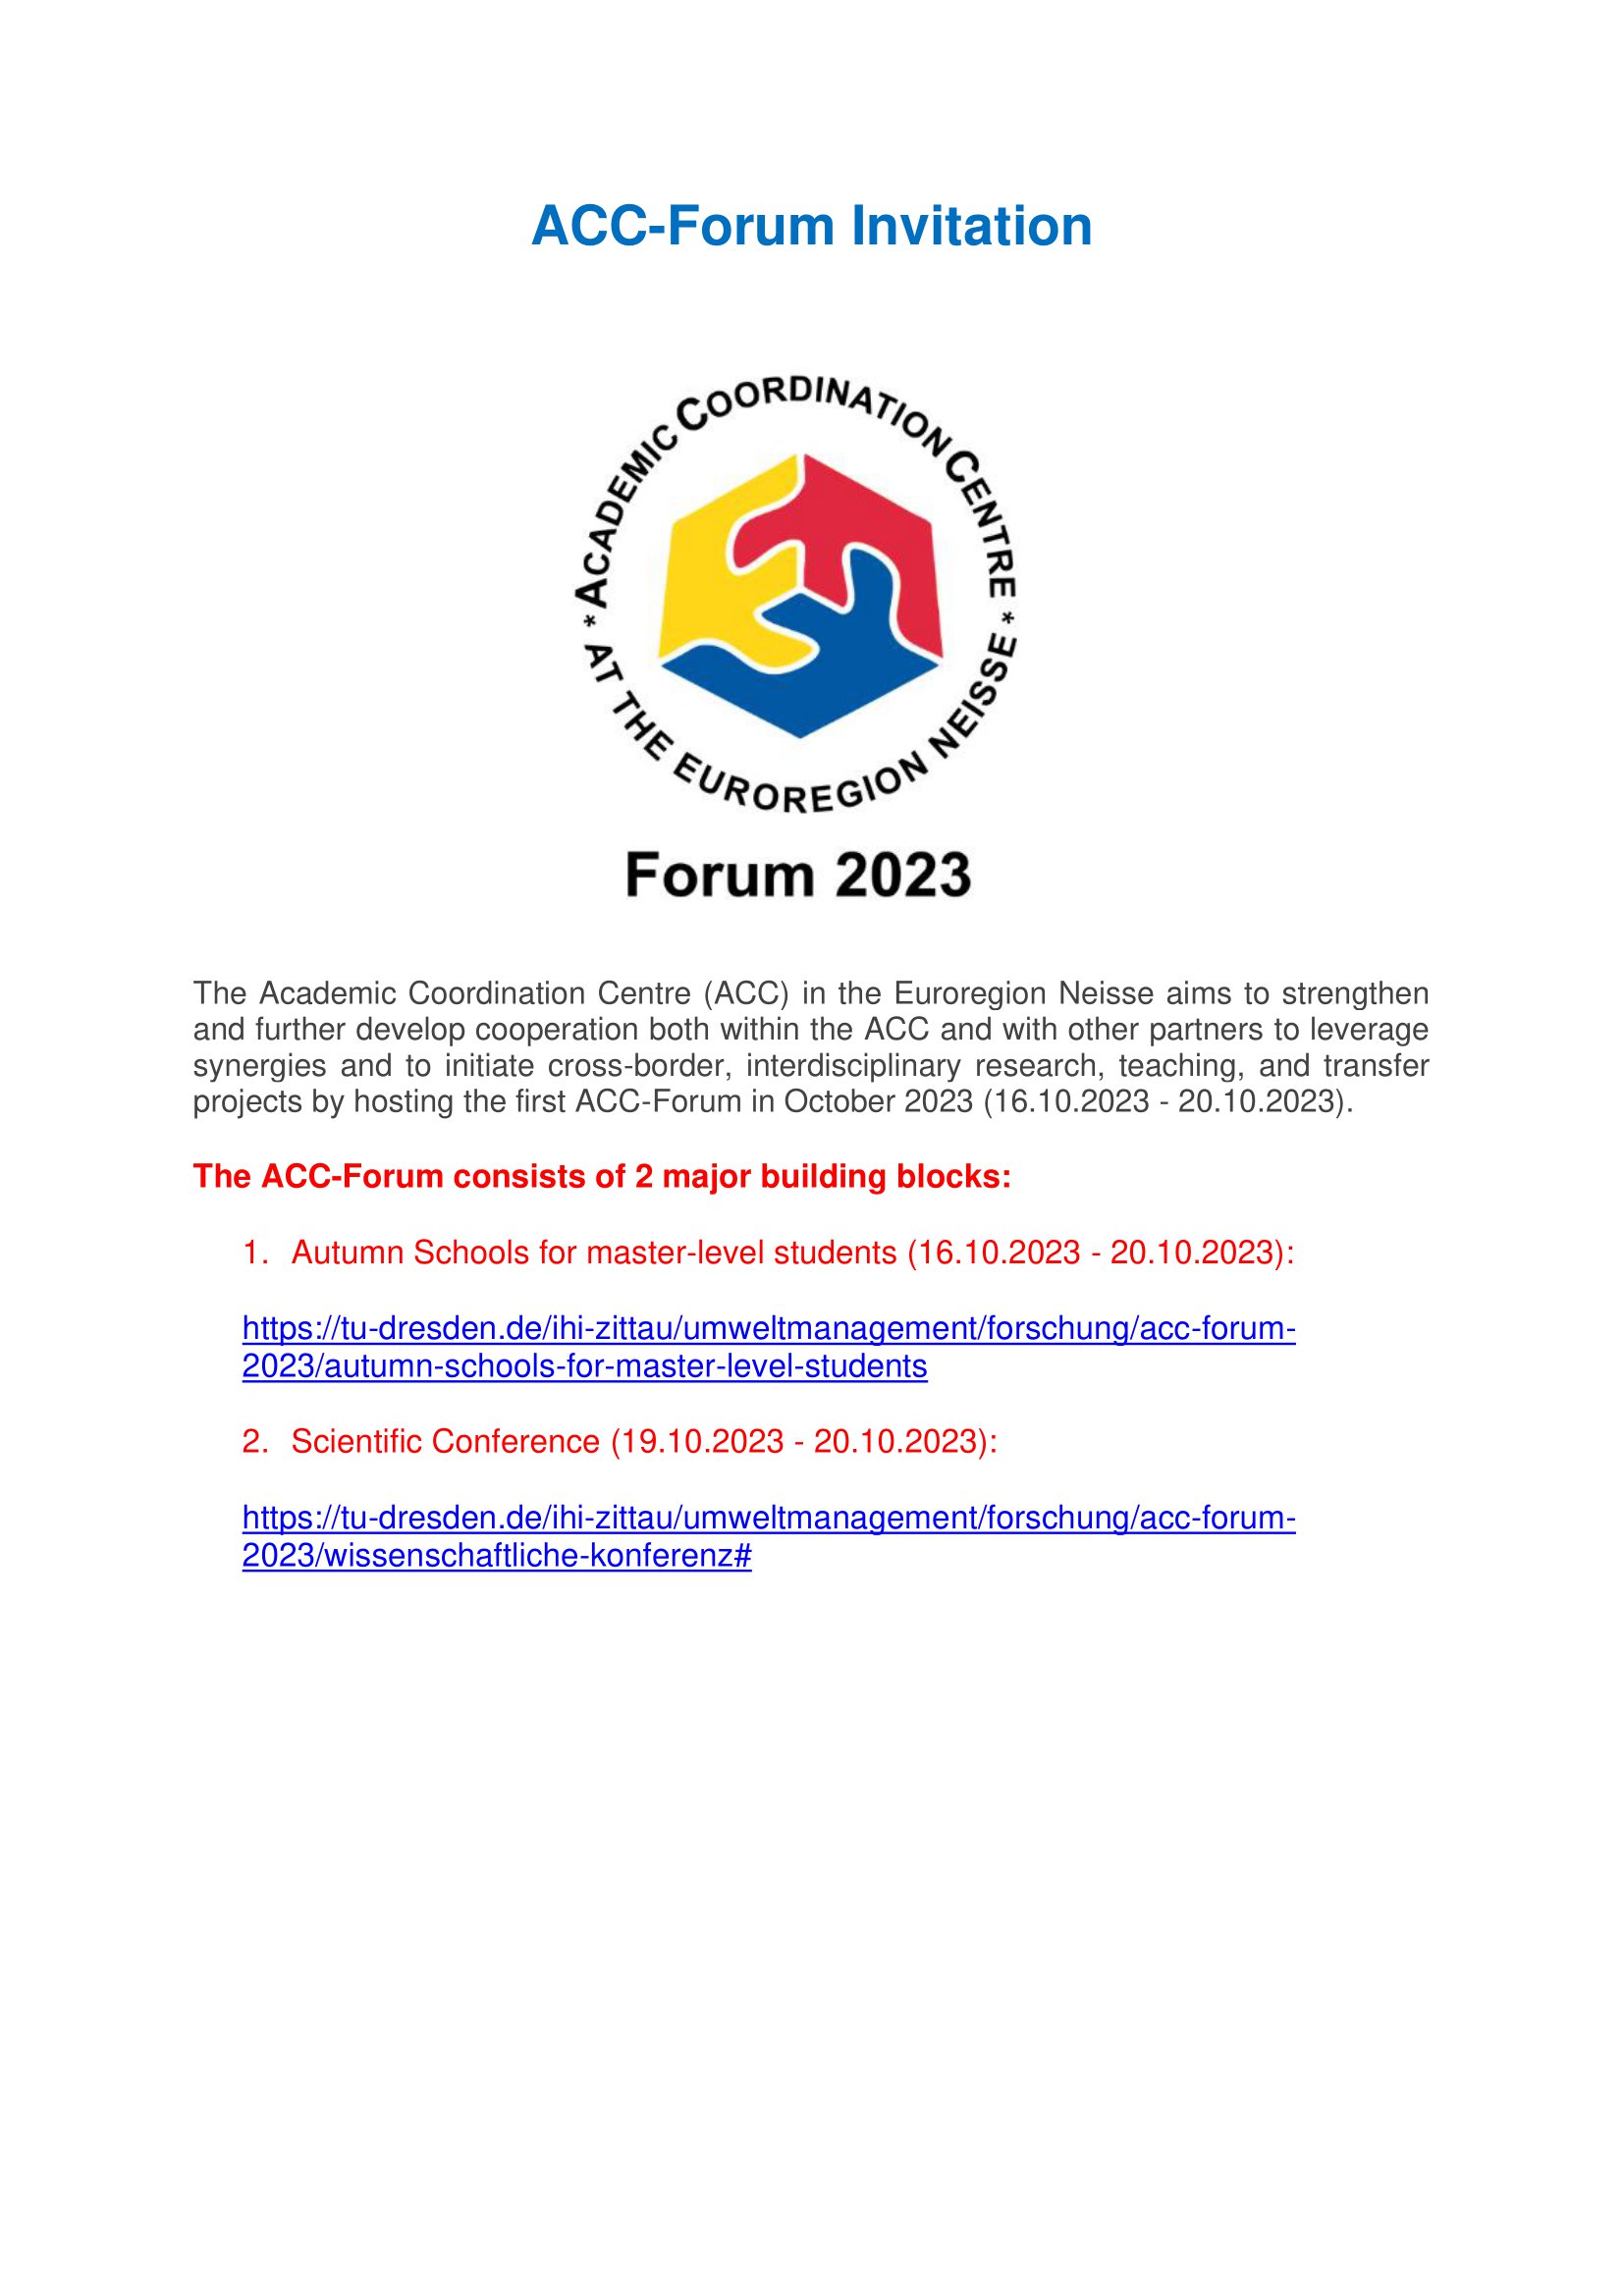 zaproszenie_na_acc_forum_2023